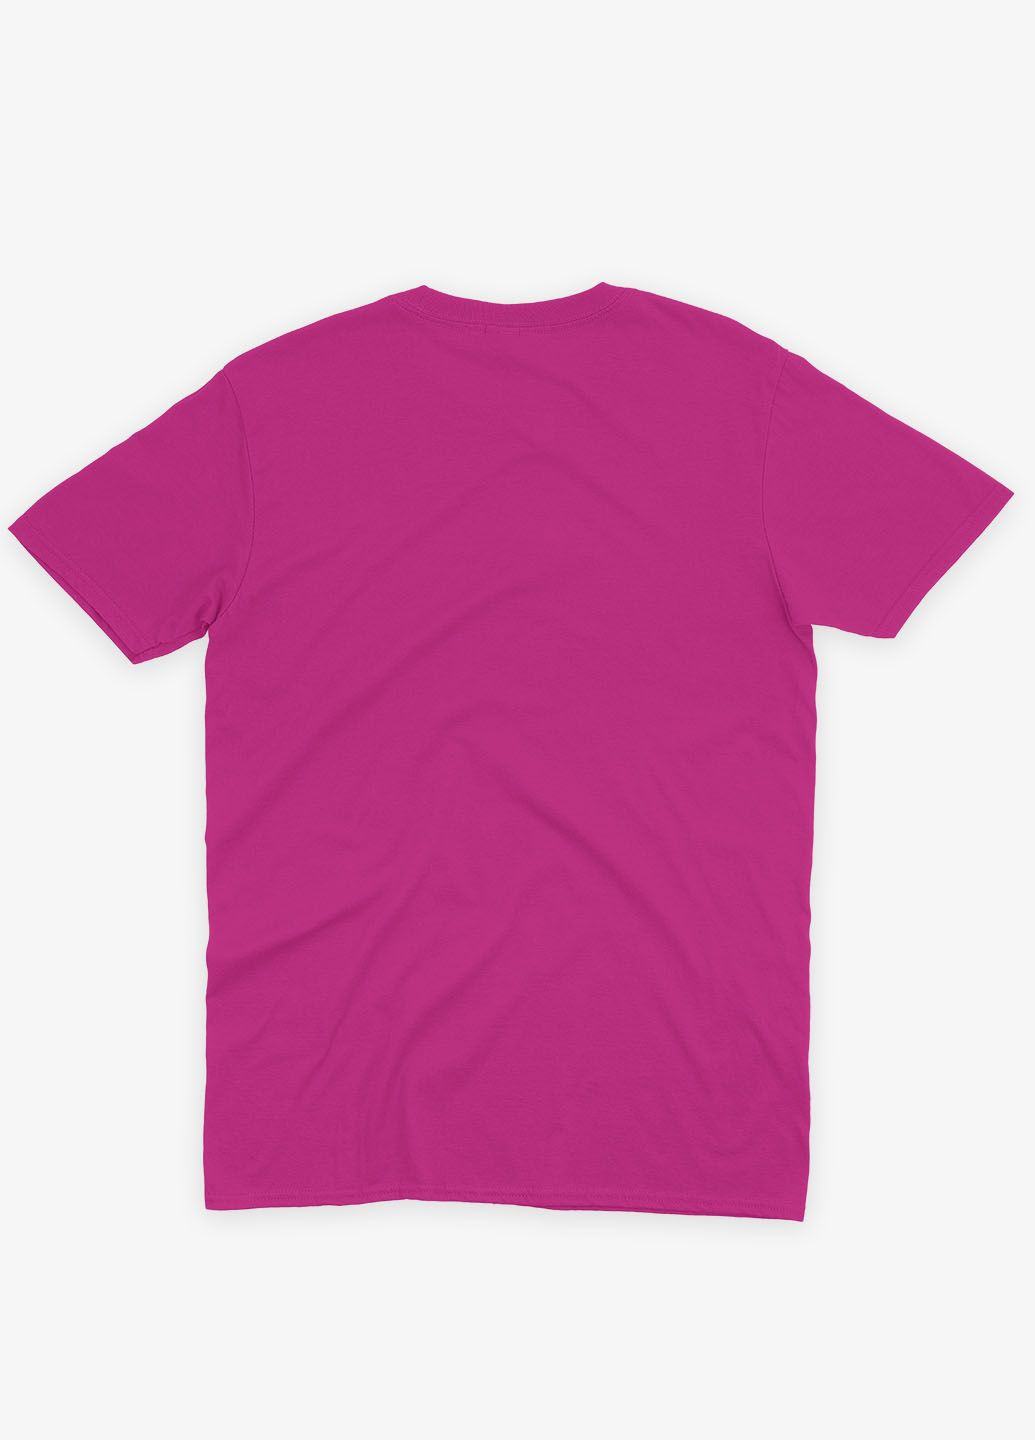 Розовая демисезонная футболка для девочки с принтом супергероя - железный человек (ts001-1-fuxj-006-016-011-g) Modno